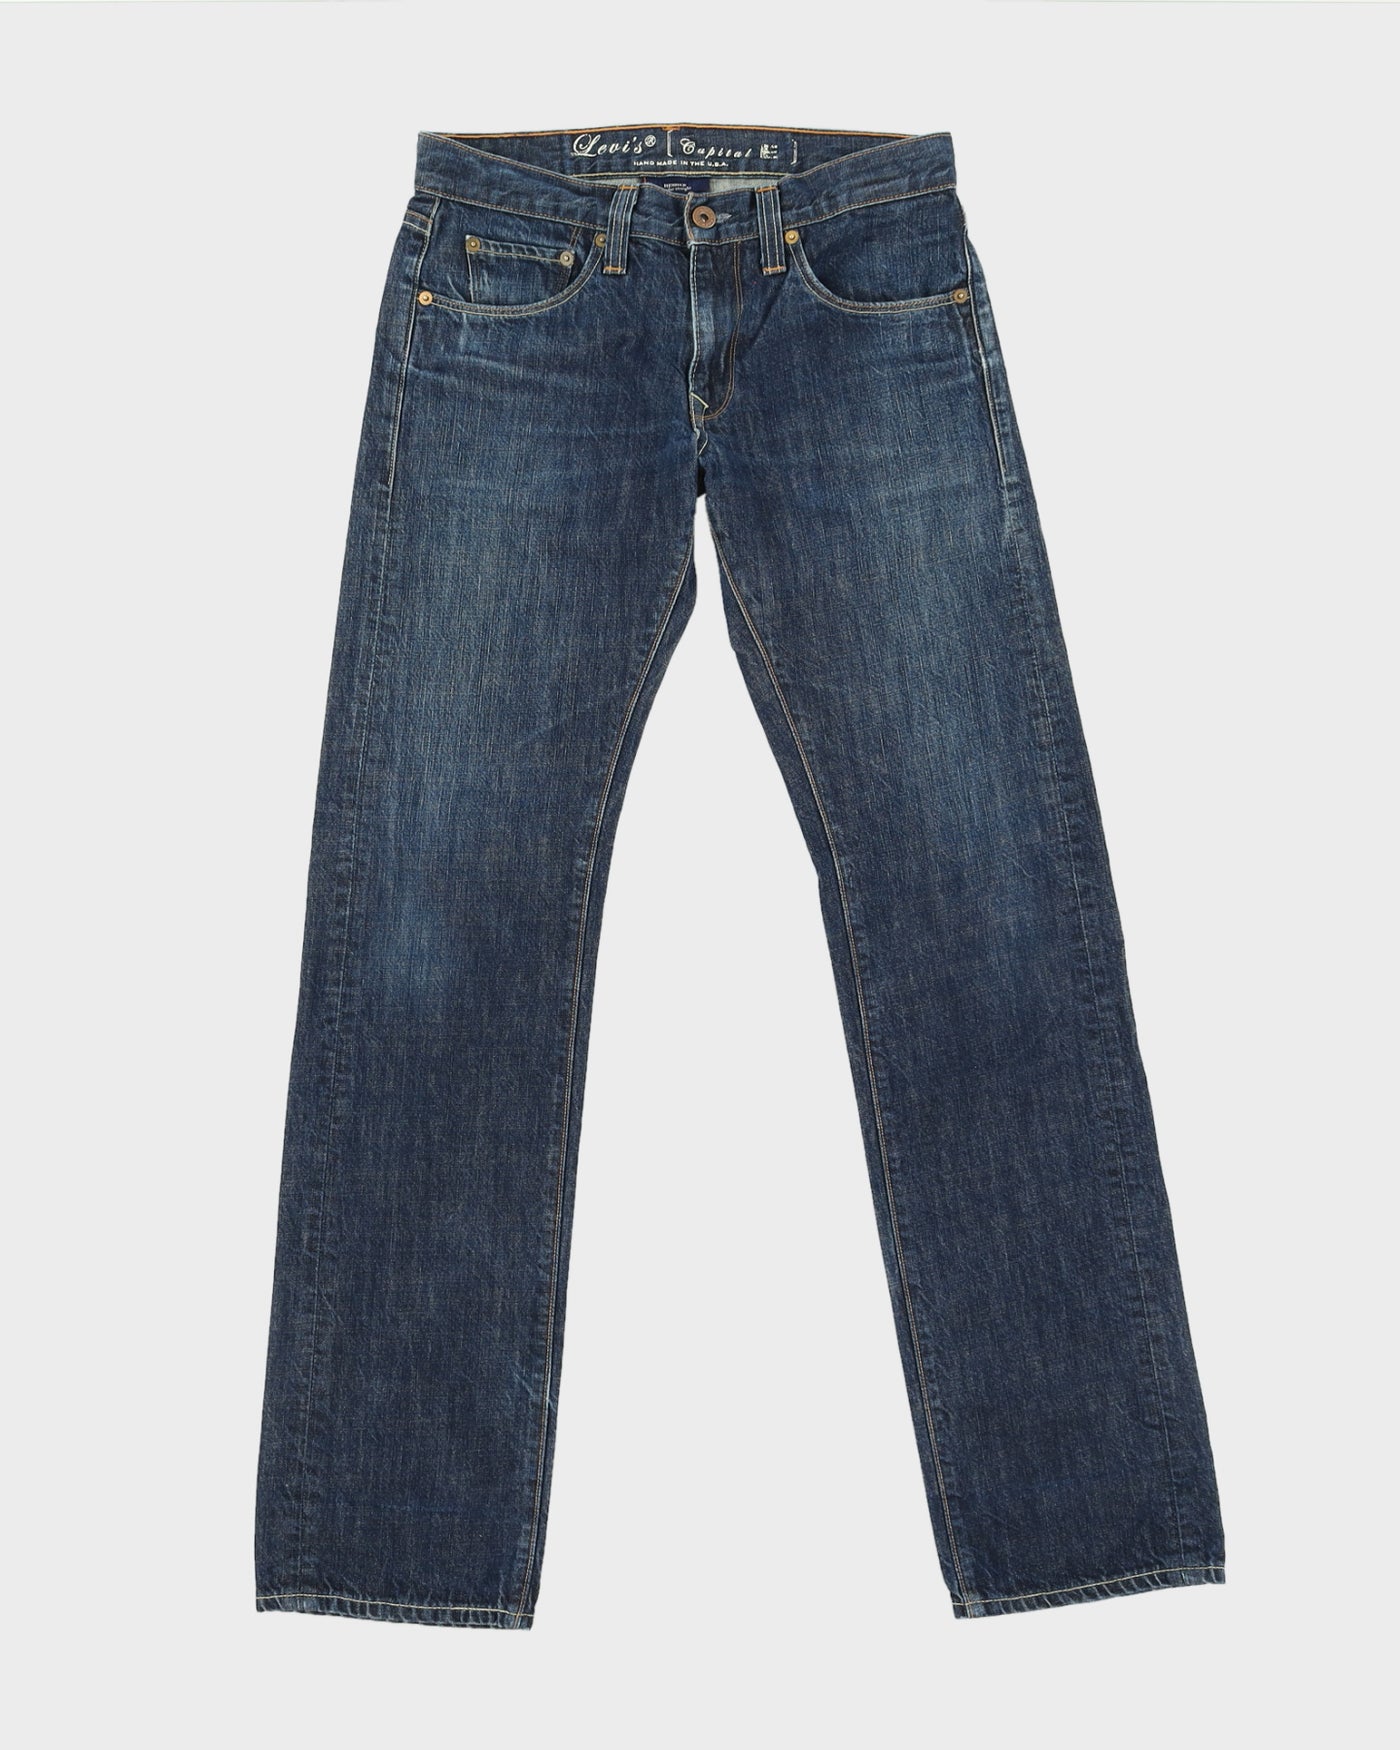 00s Levi's Capital E Hesher Blue Jeans - W29 L35 – Rokit